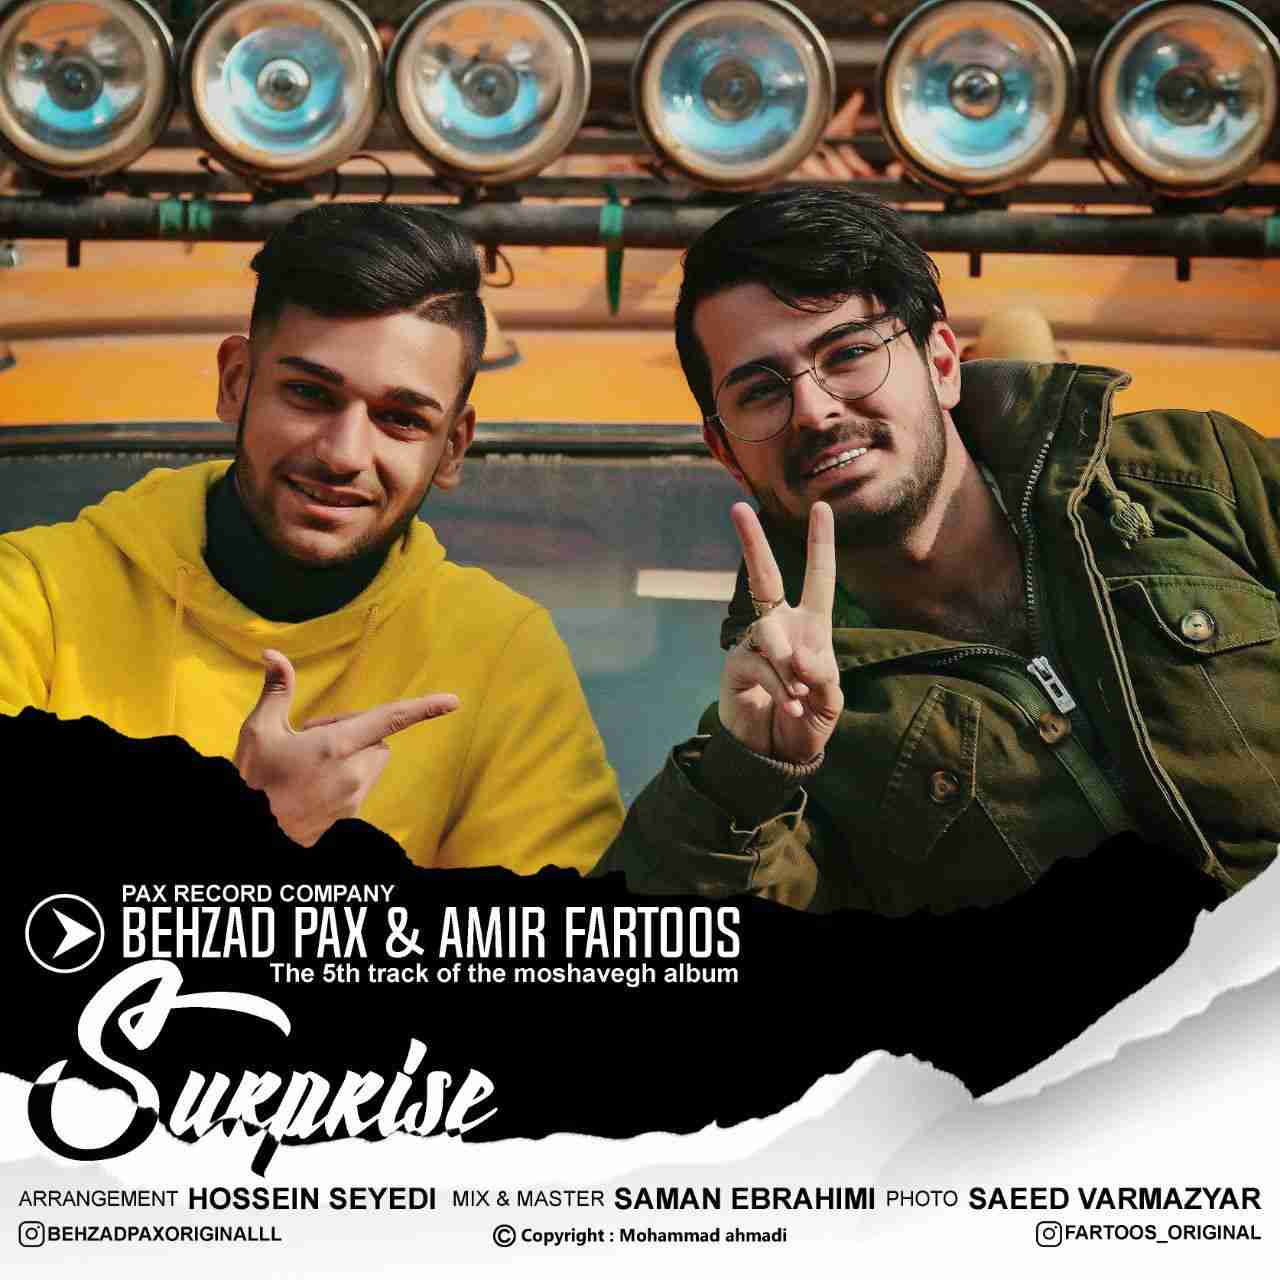 Behzad Pax & Amir Fartoos - Suprize